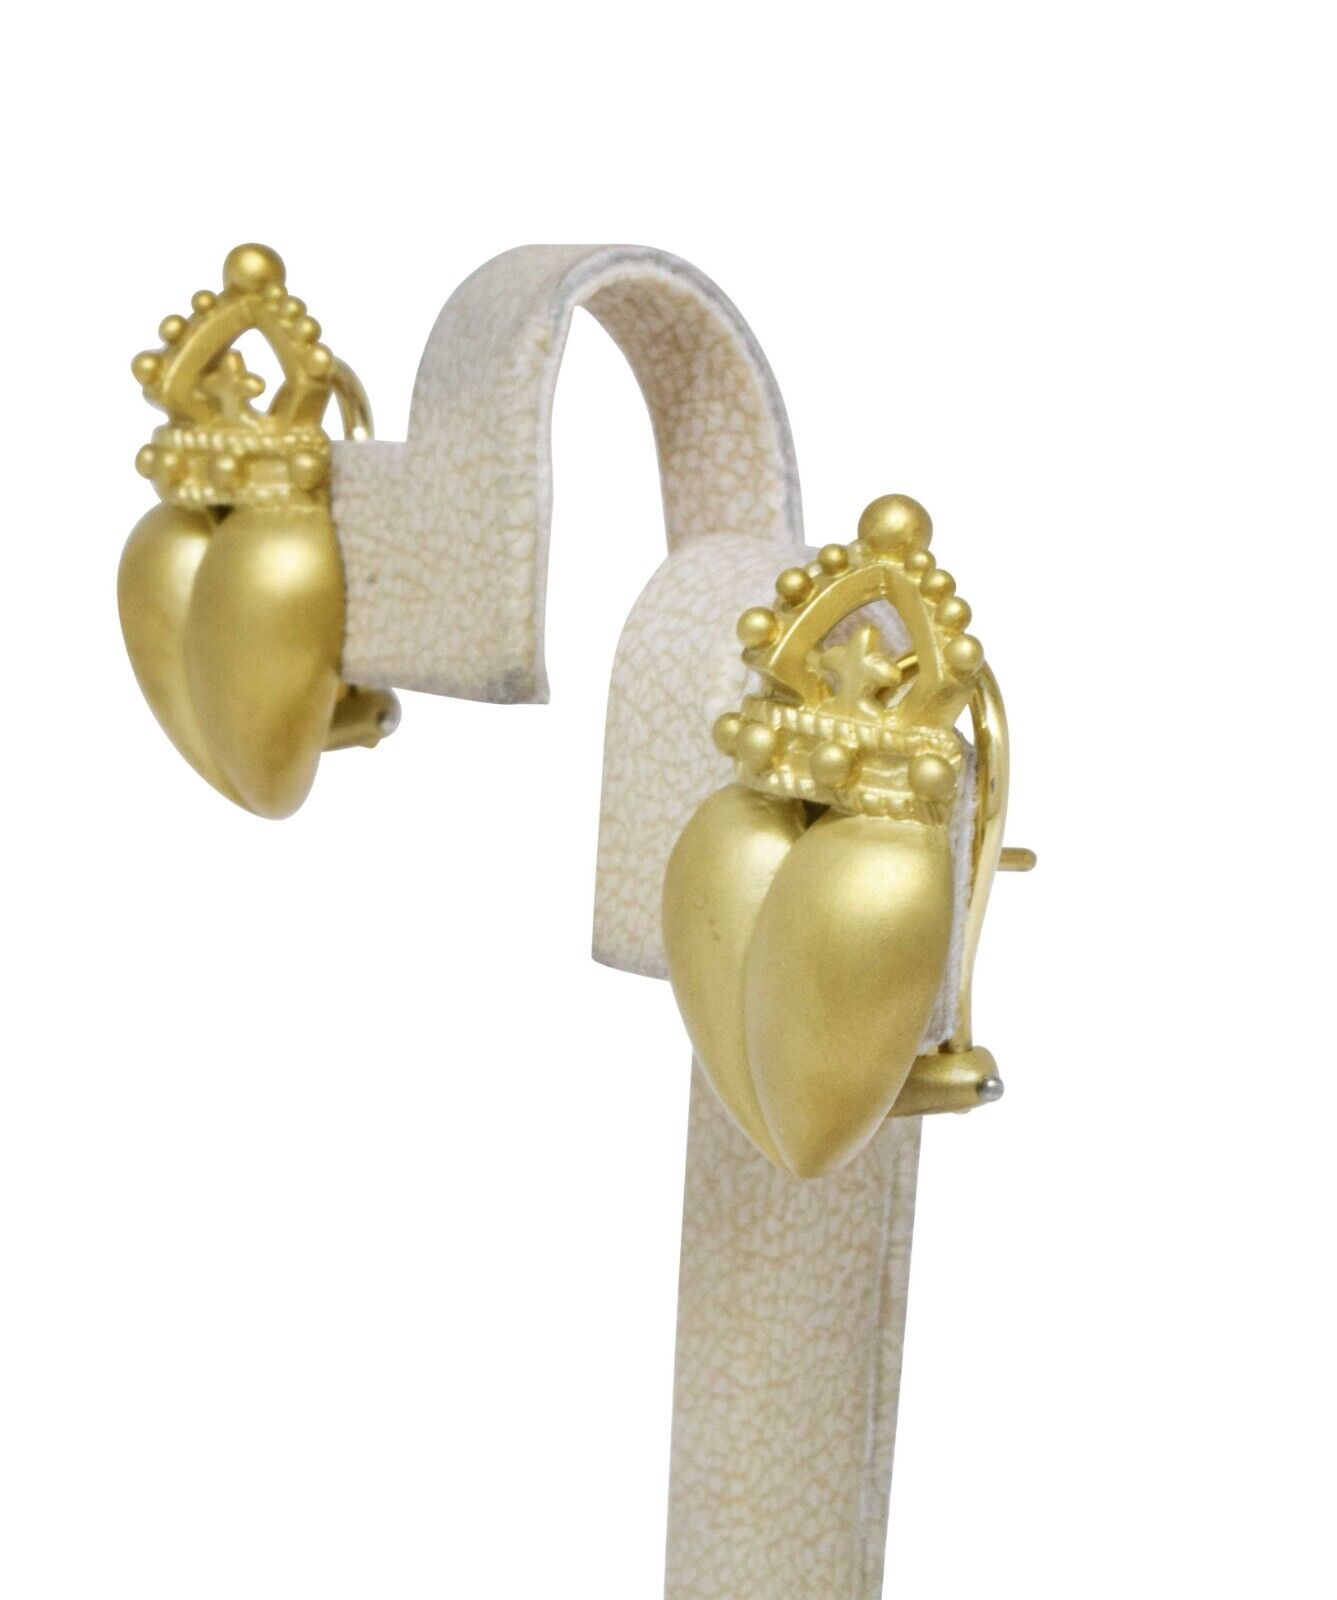 Kieselstein Cord Iconic Heart & Crown 18k Yellow Gold Earrings 1987